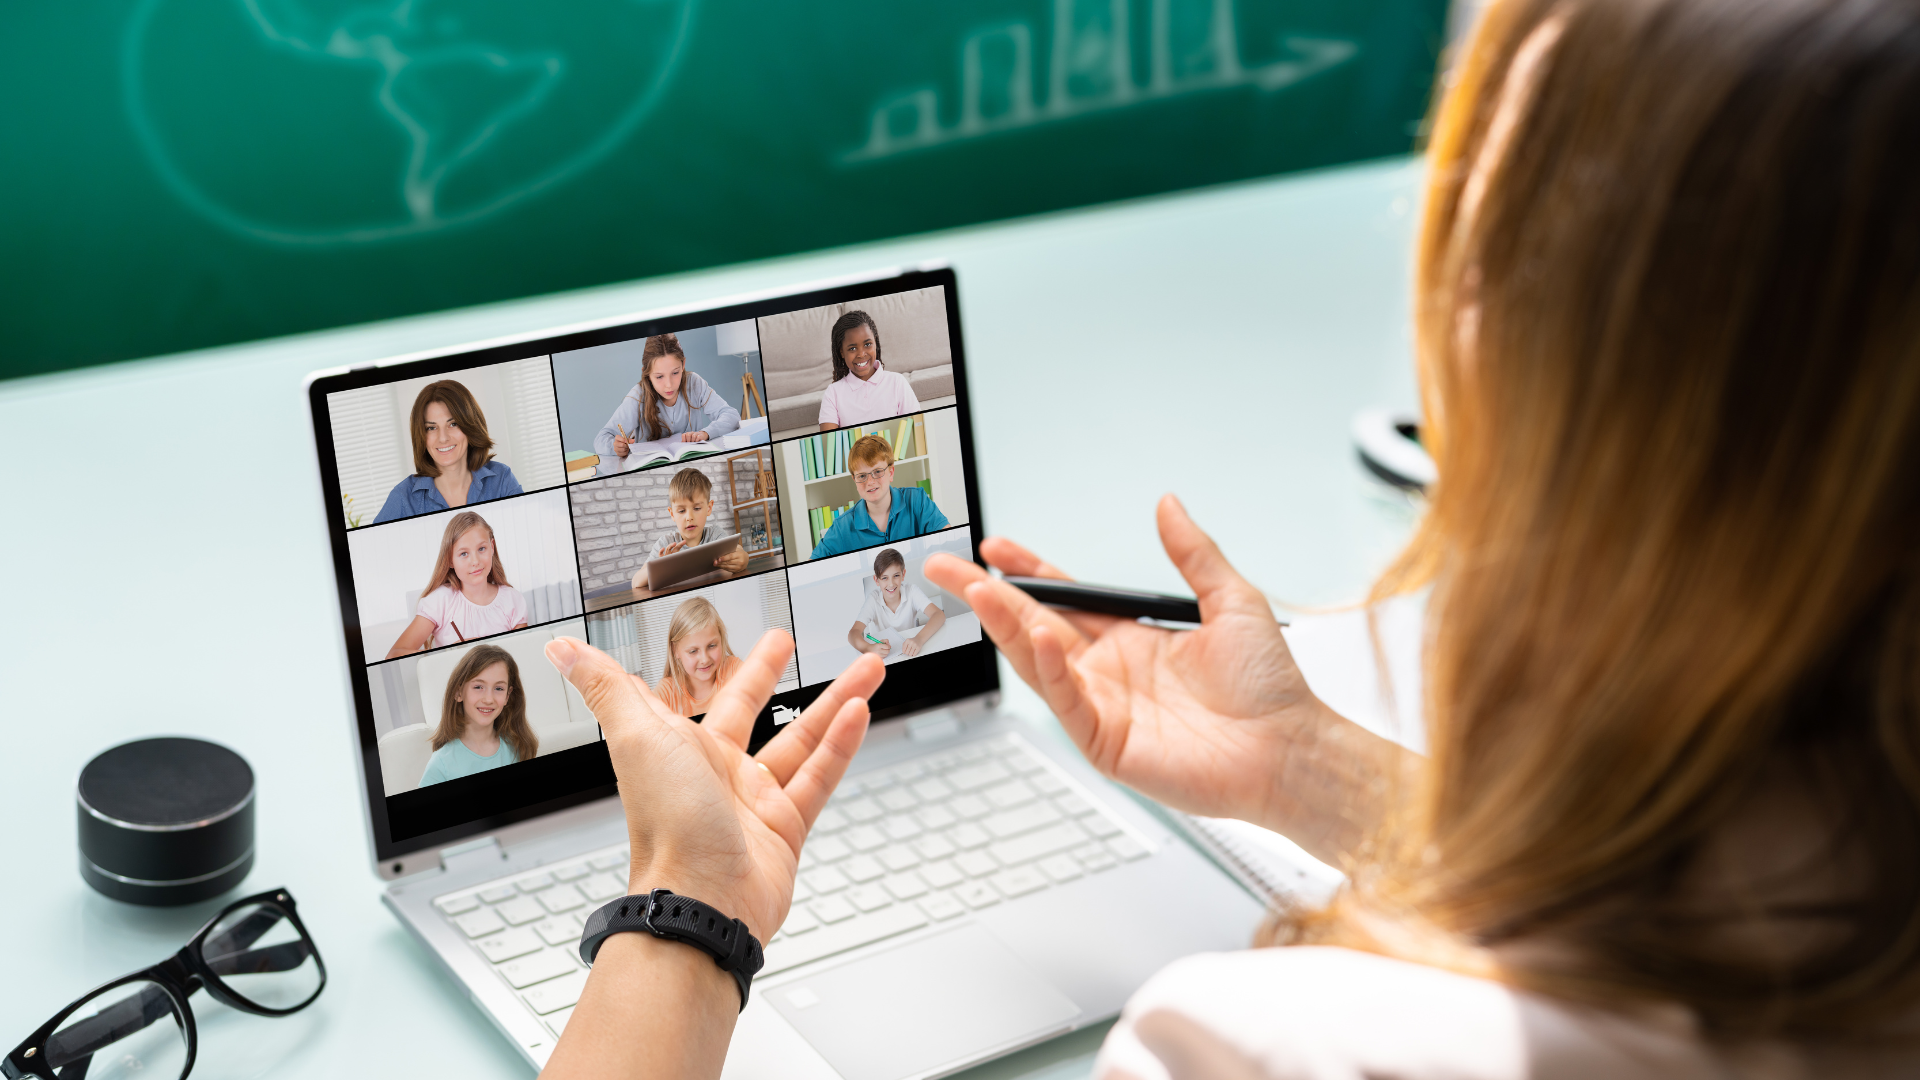 Дистанционное обучение, 5 класс: онлайн-обучение - Онлайн школа Проект 977